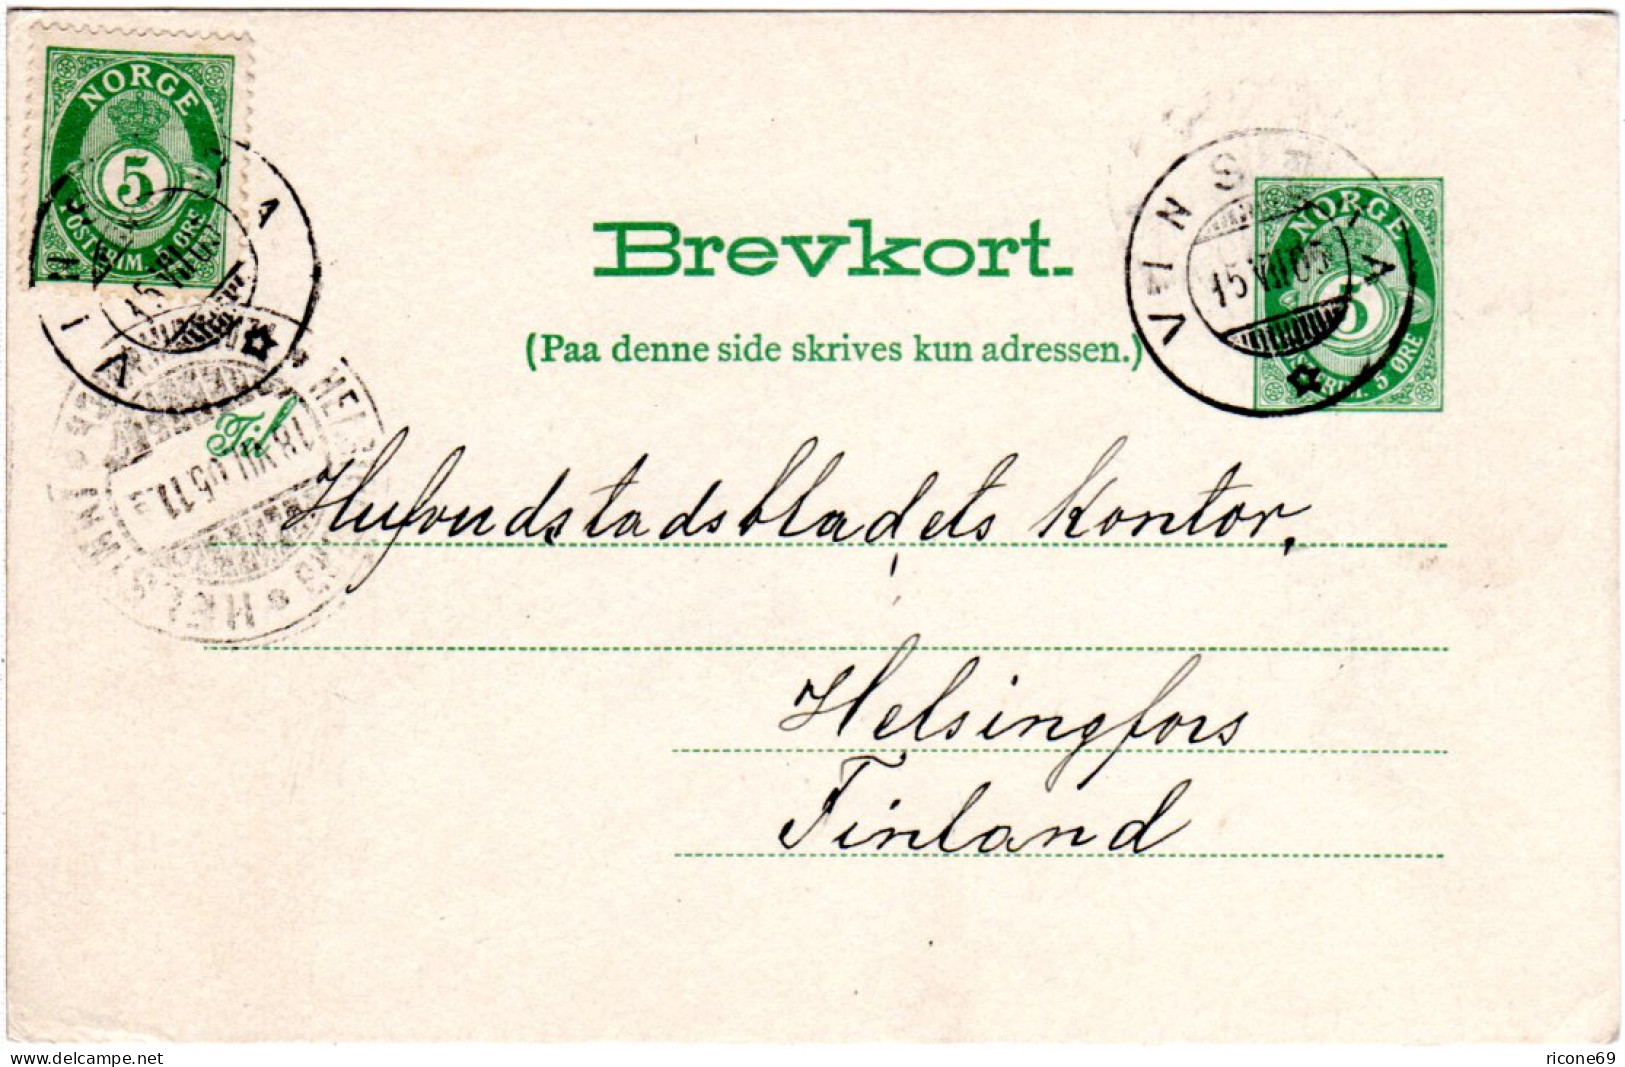 Norwegen 1905, 5 öre Zusatzfr. Auf 5 öre Ganzsache V. VINSTRA N. Finnland - Brieven En Documenten